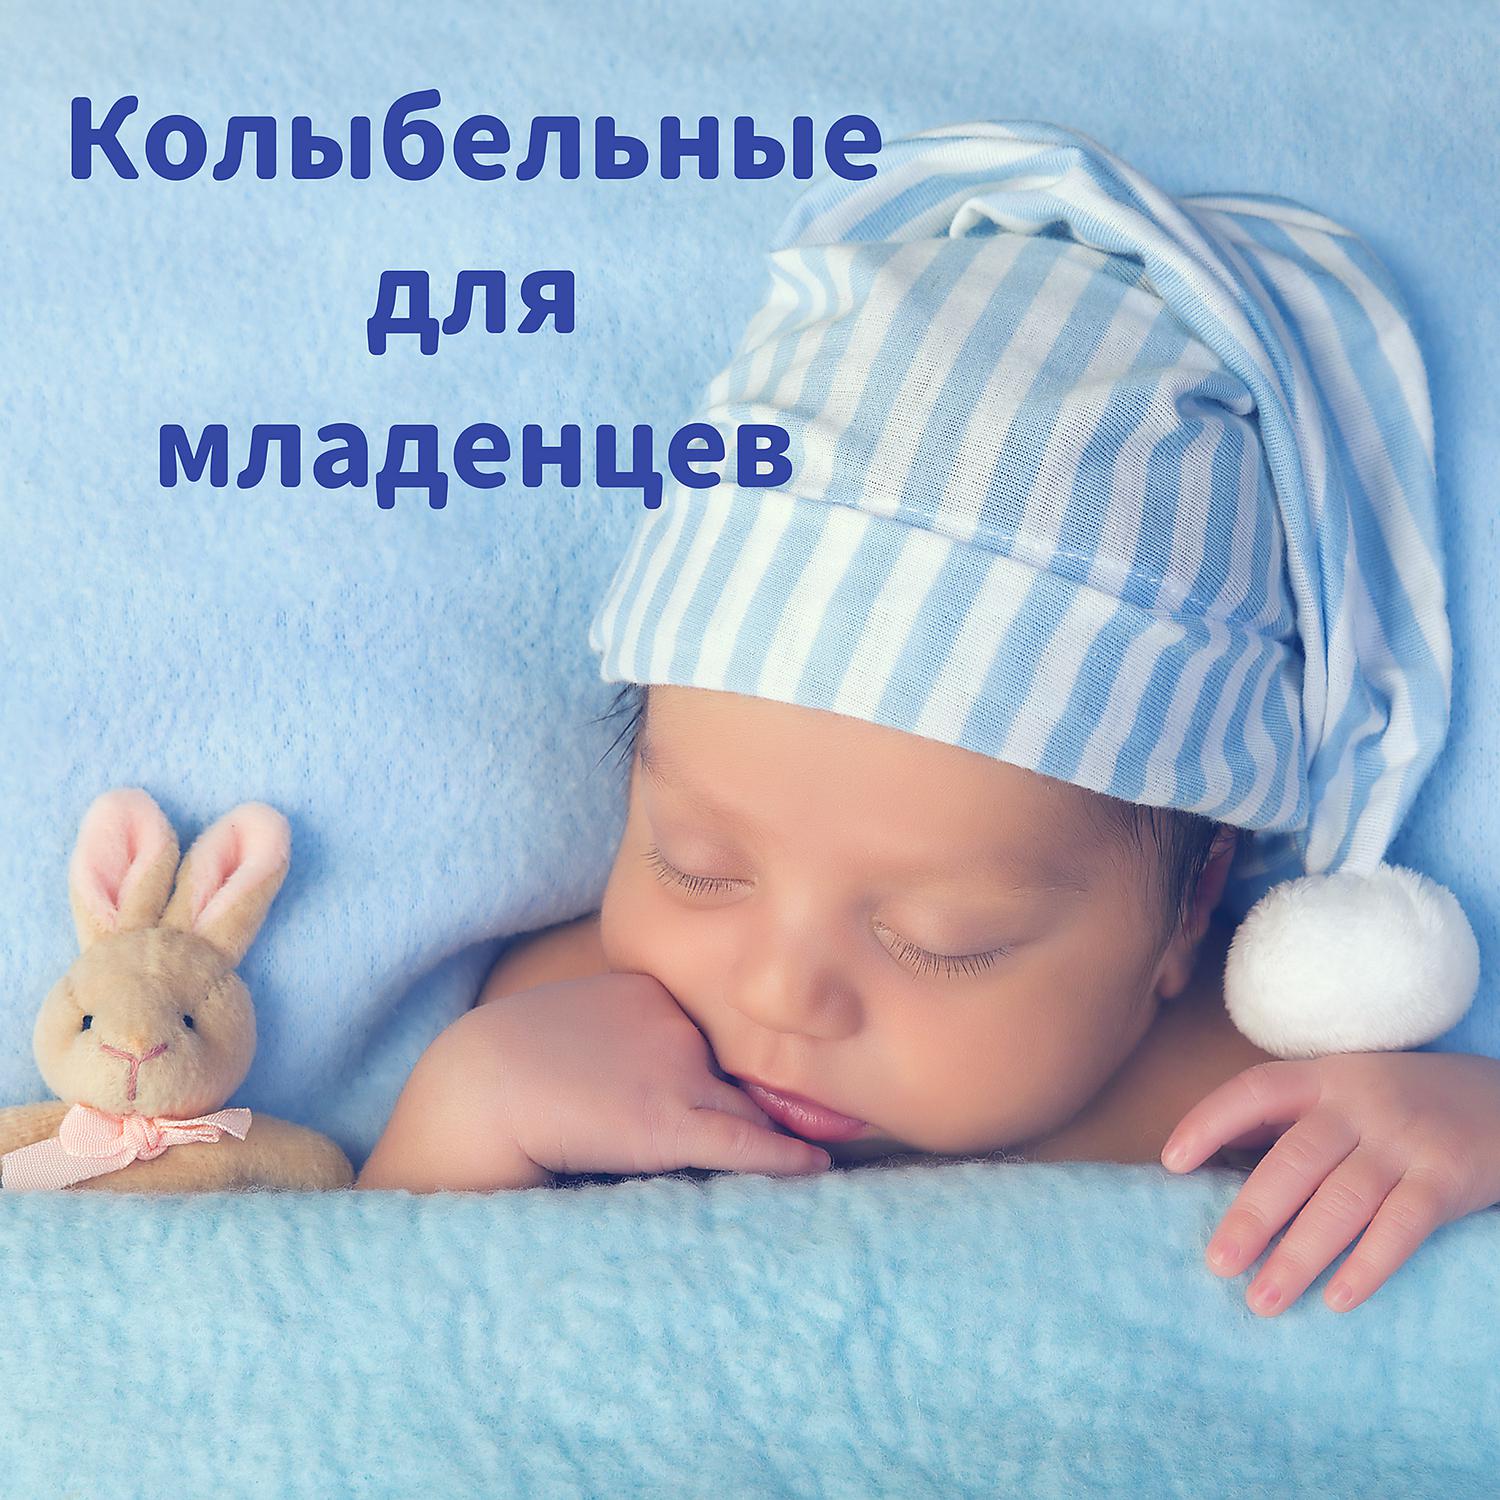 Звук спящего ребенка. Колыбельная для младенцев. Колыбельная для новорожденных для сна. Лучшие колыбельные для новорожденных. Песенка для новорожденных для сна.